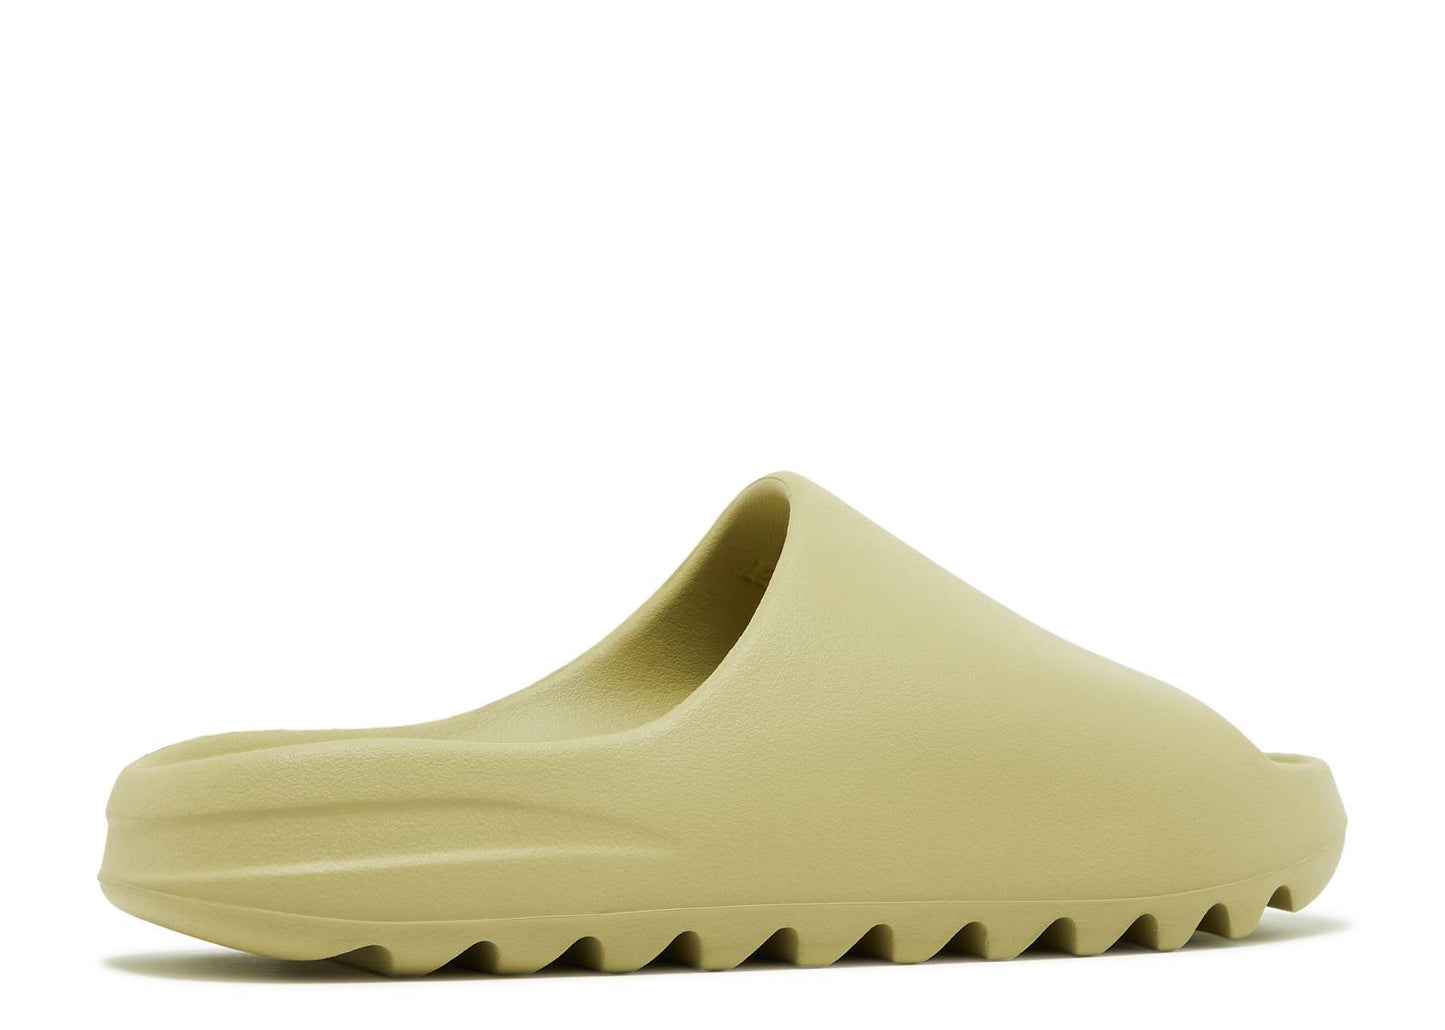 Adidas Yeezy Slide "Resin" 2022